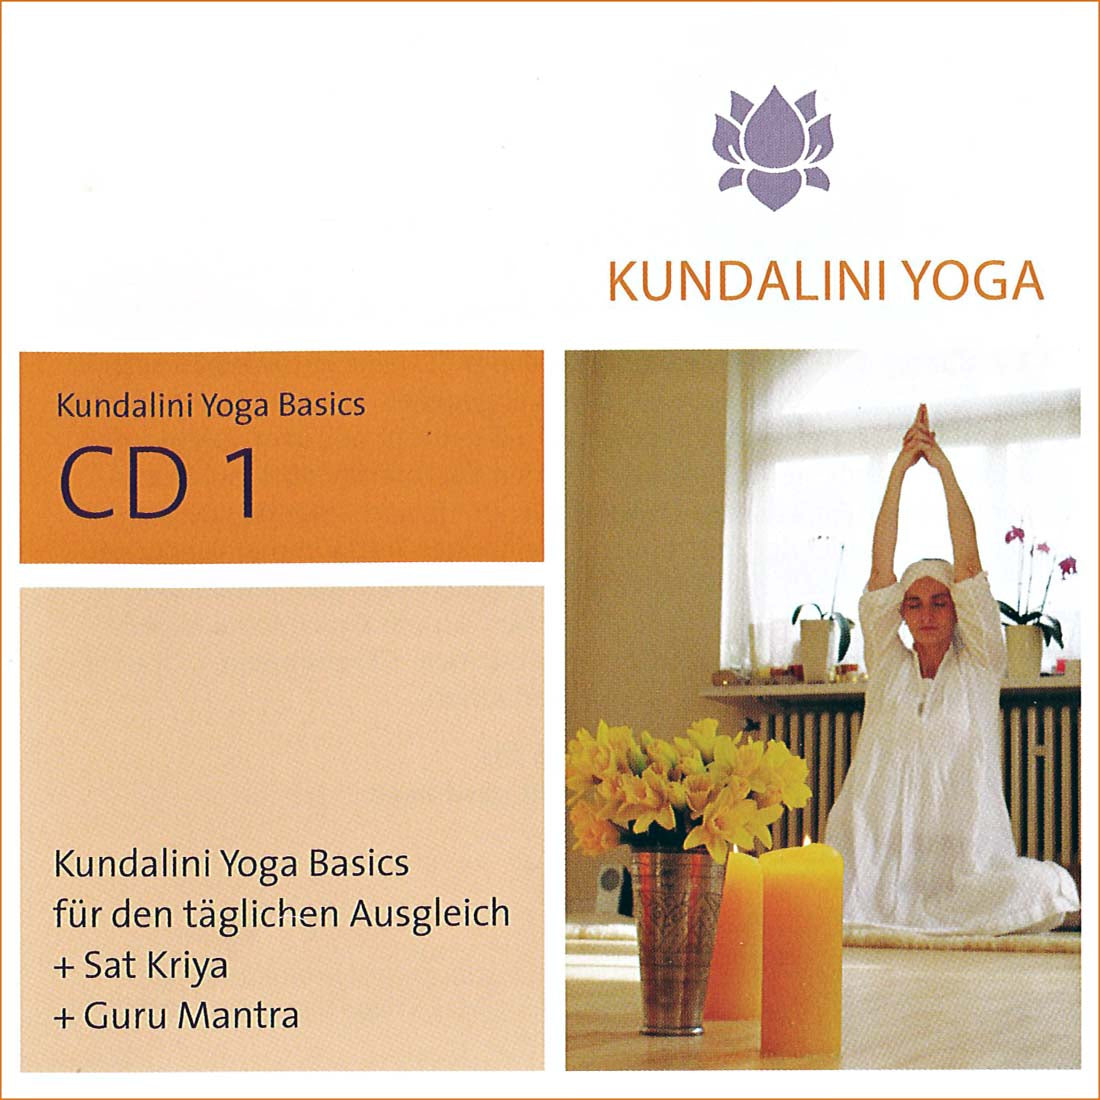 Kundalini Yoga Basics CD 2 - Gurmeet Kaur complete